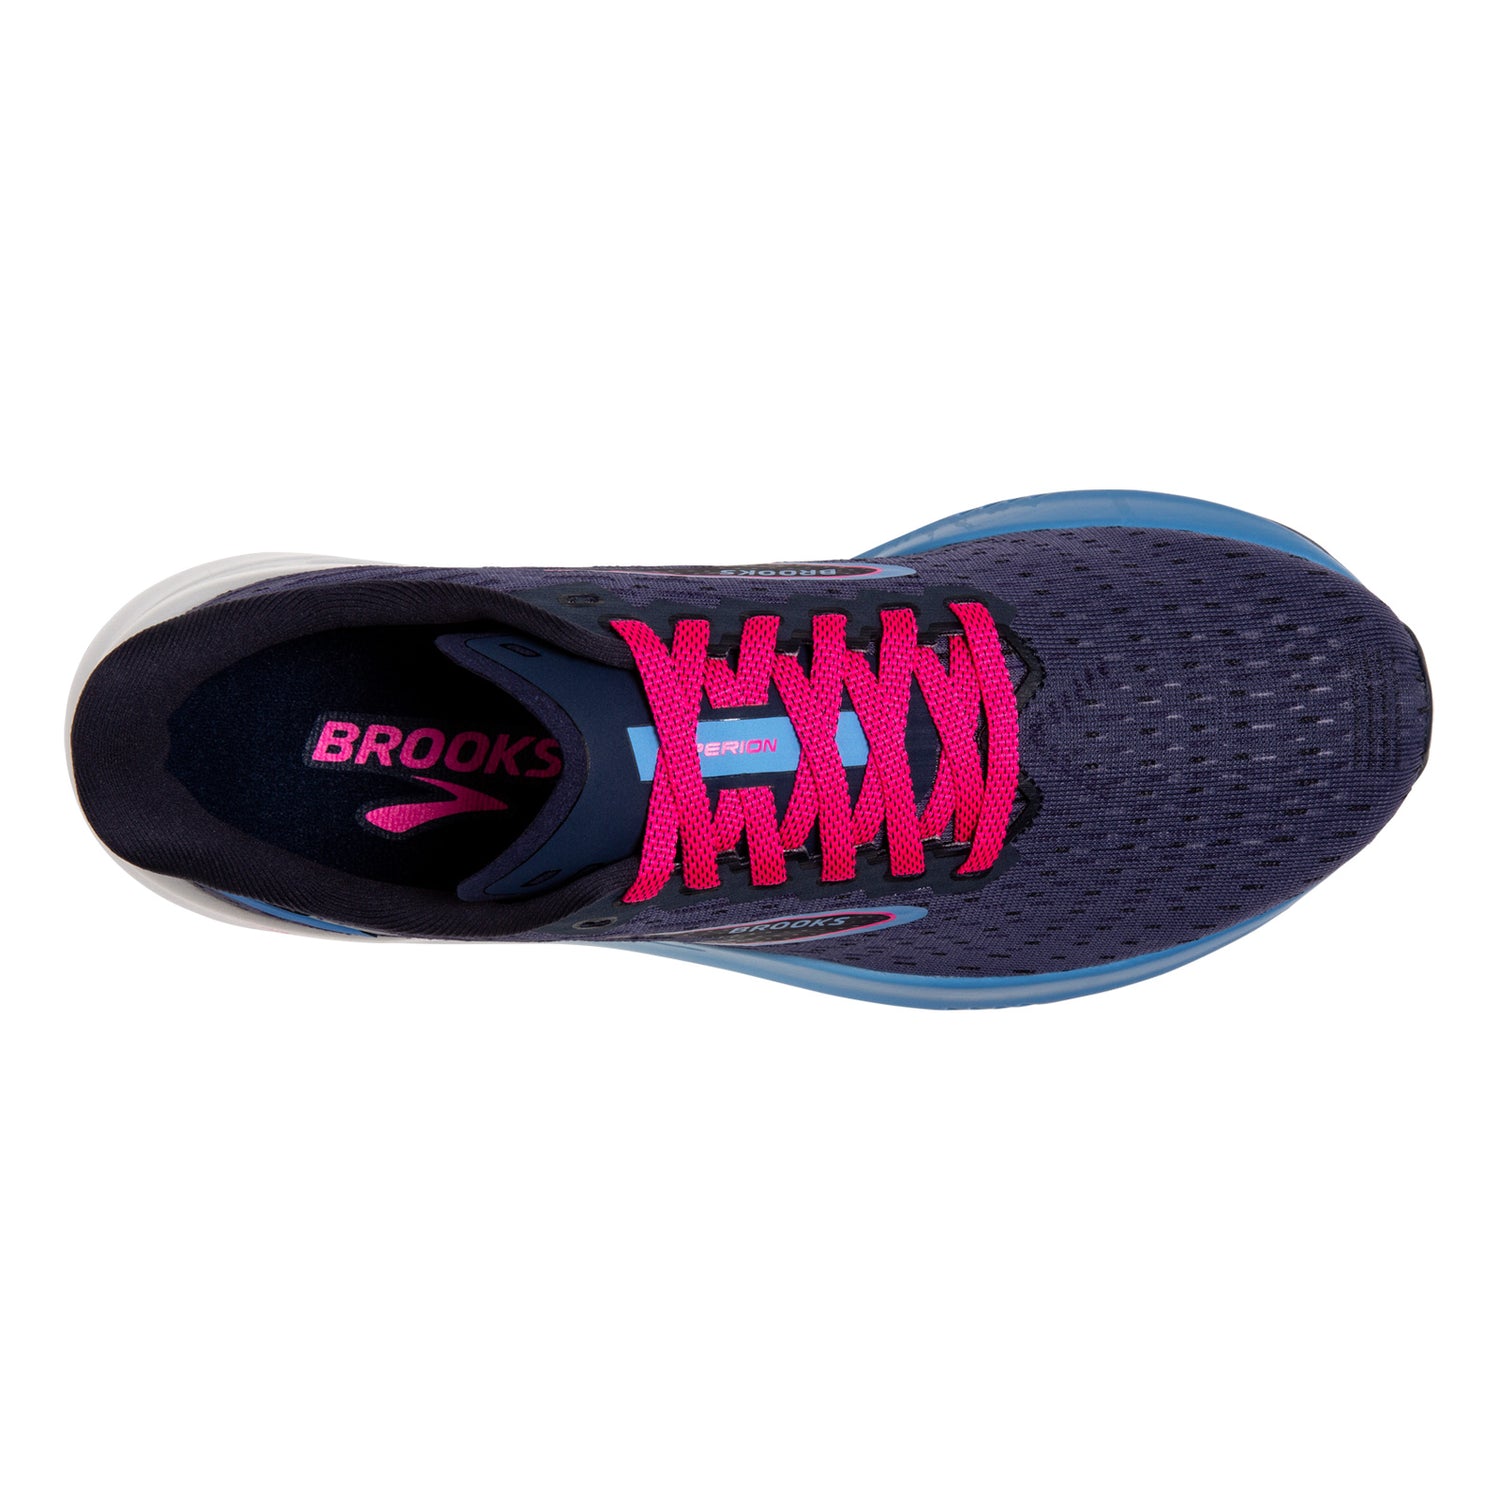 Peltz Shoes  Women's Brooks Hyperion Running Shoe Peacoat/Open Air/Lilac Rose 120396 1B 430